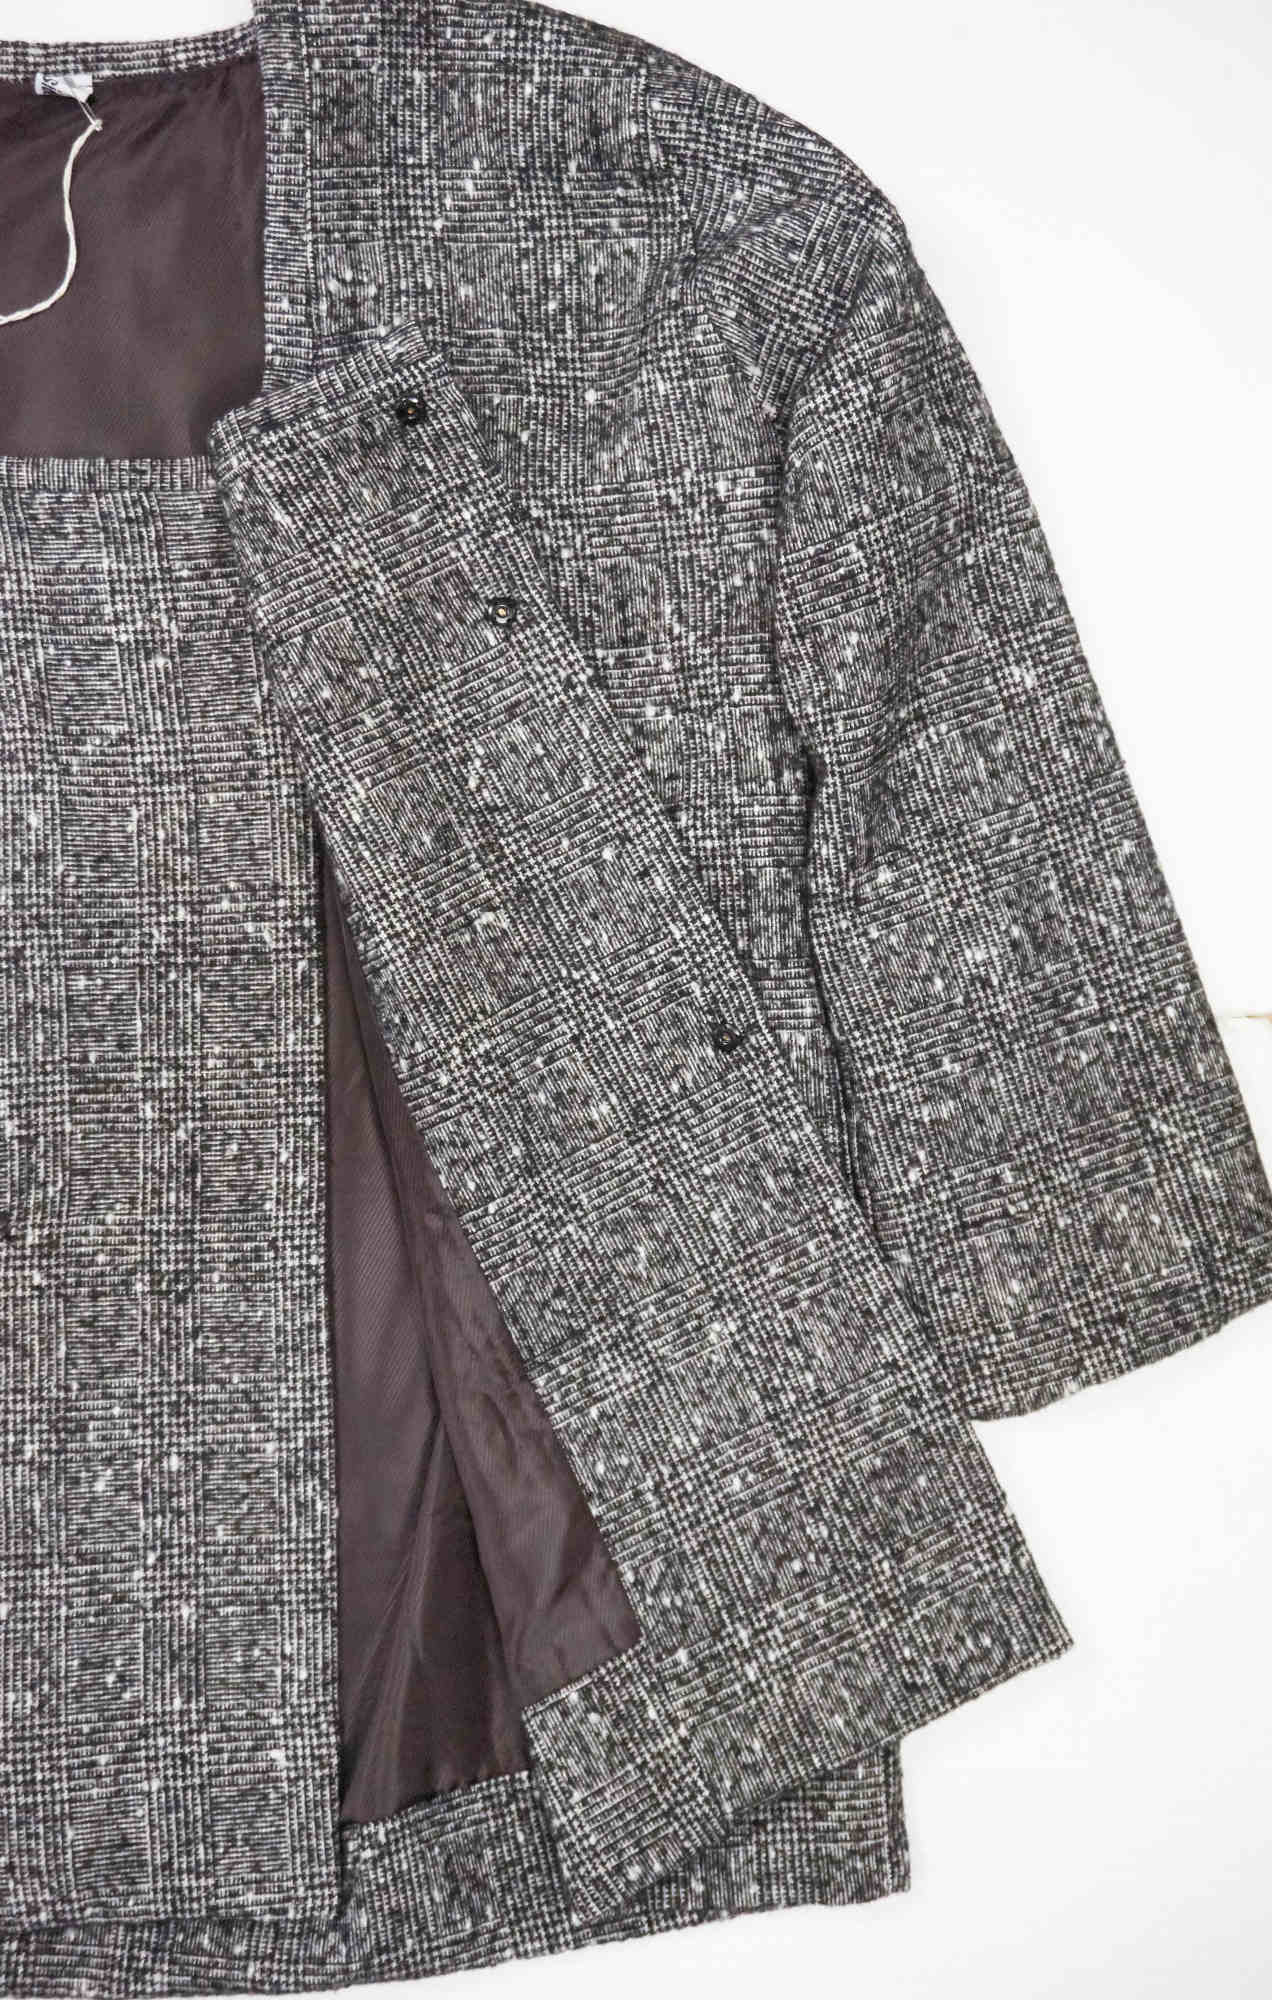 giacca in lana ABside, morbida, foderata e con tasca anteriore